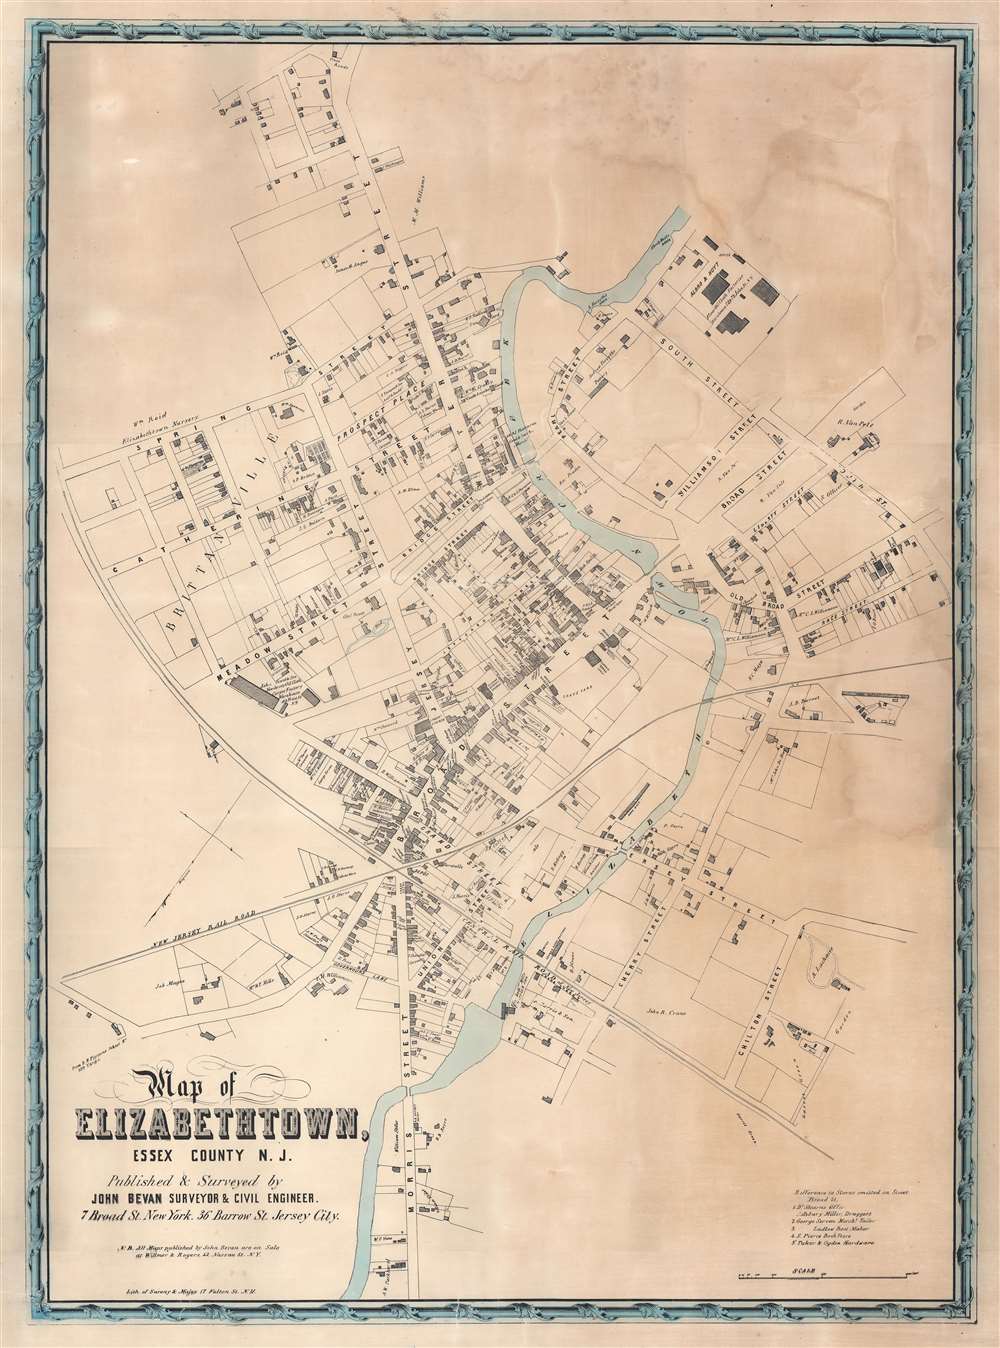 1851 Bevan Wall City Plan or Map of Elizabethtown (Elizabeth), New Jersey